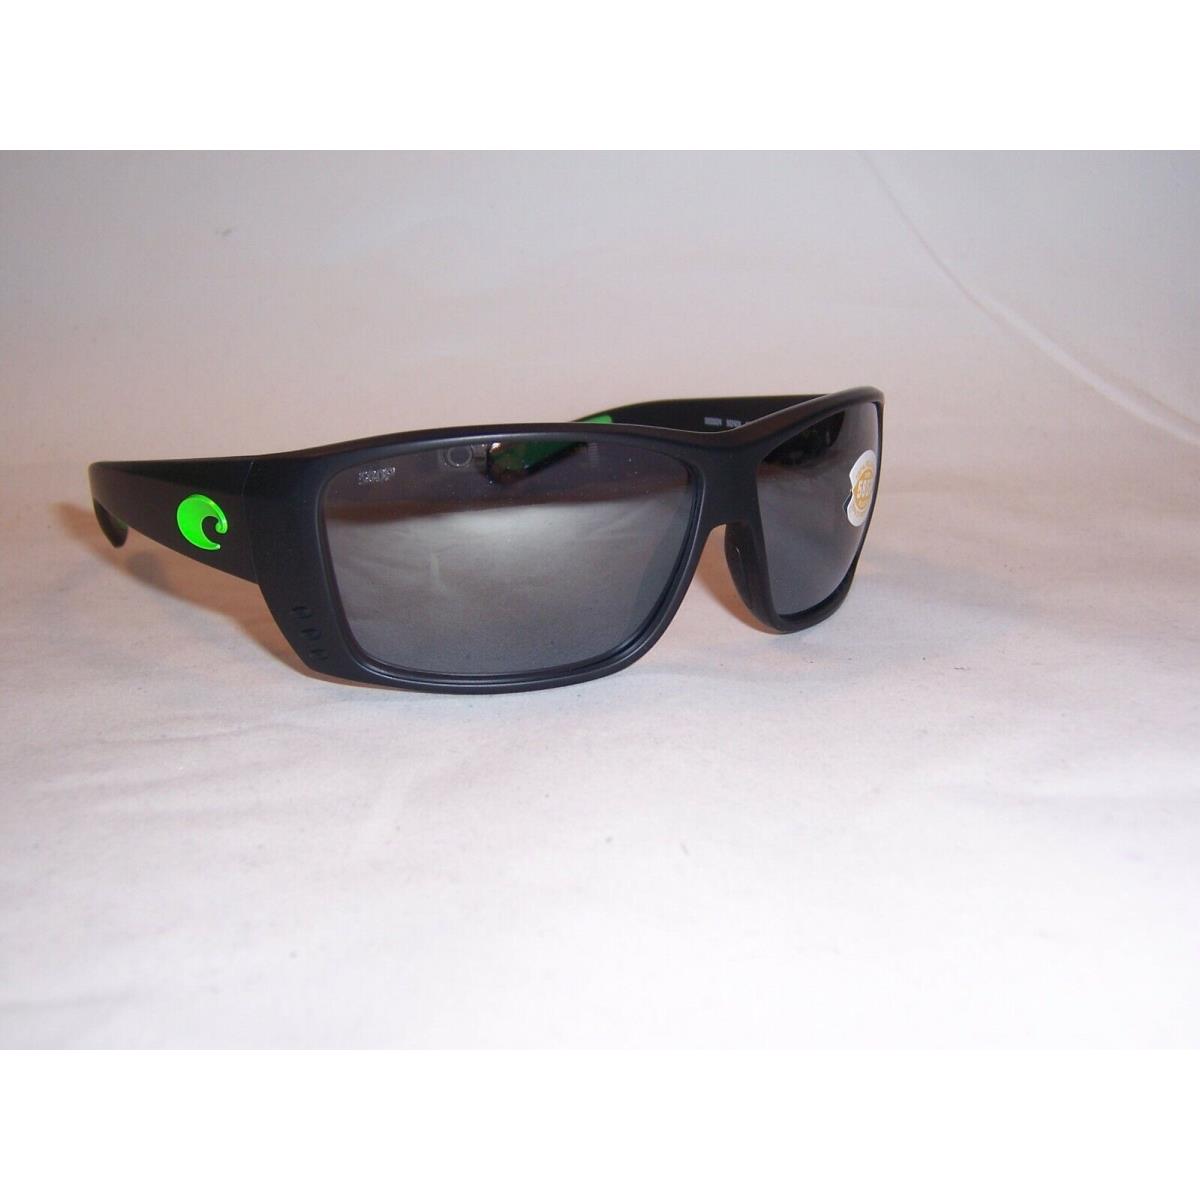 Costa Del Mar Cat Cay Sunglasses Black/gray Mirror Polarized 580P